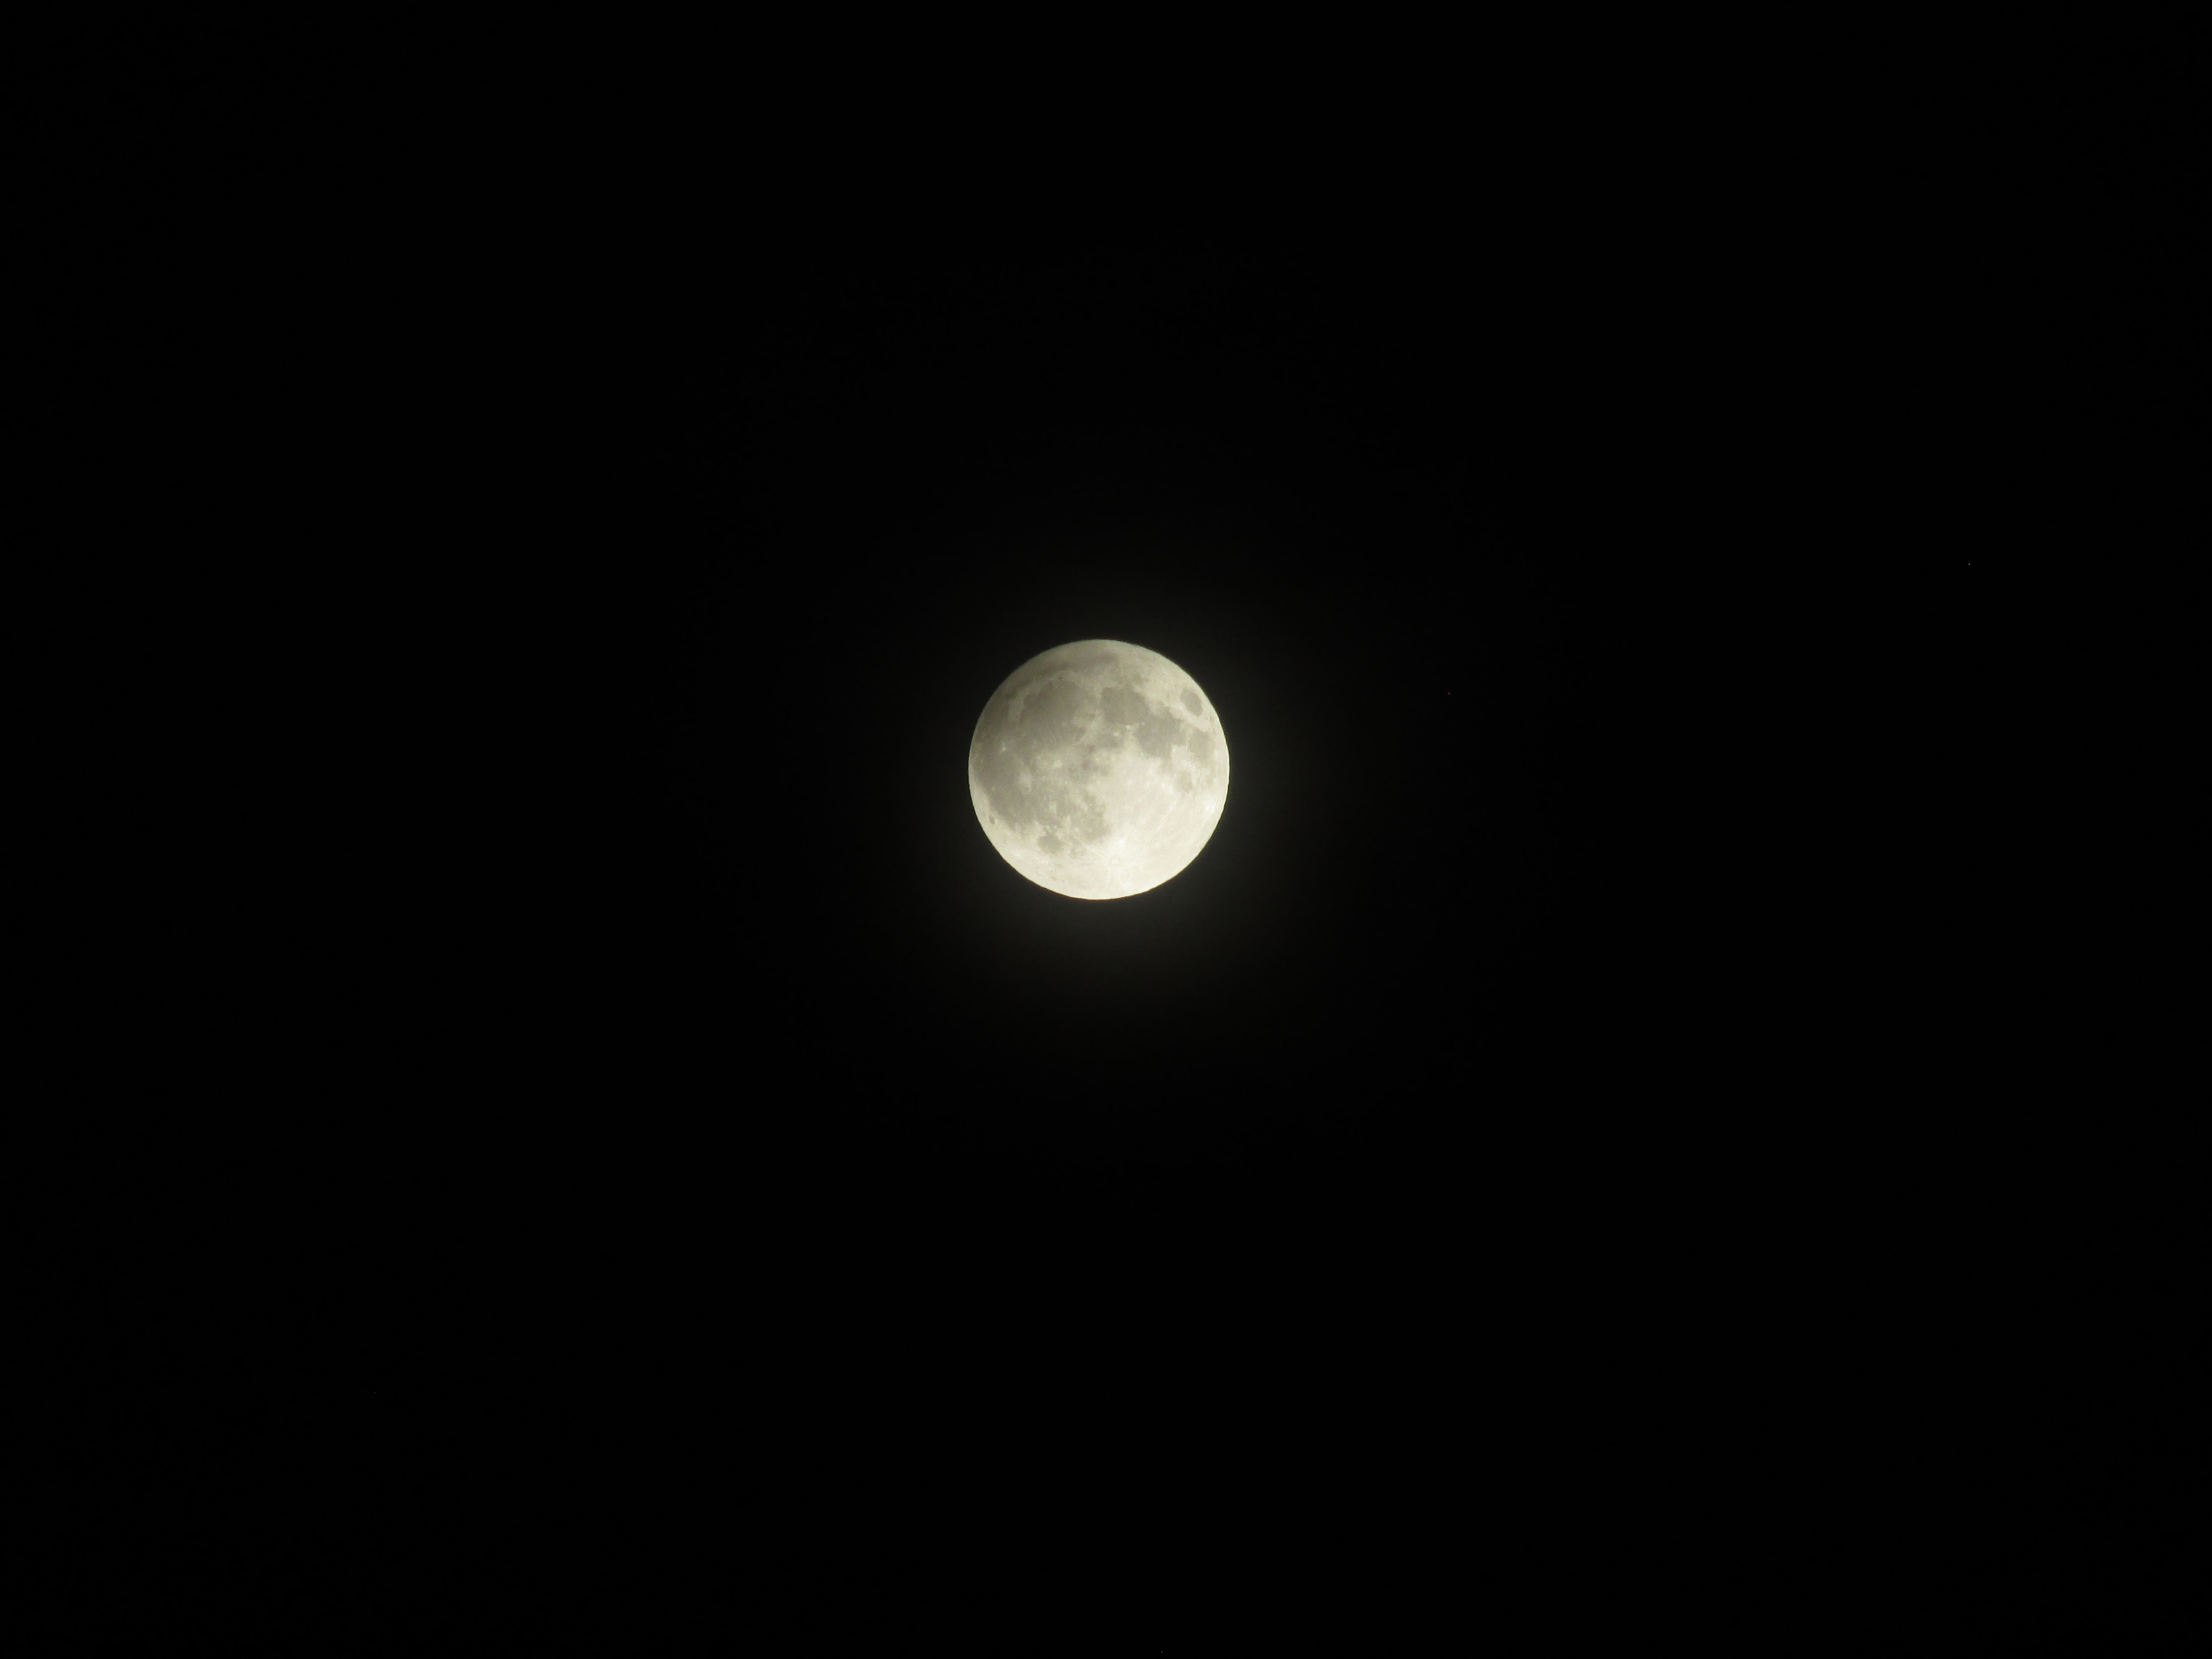 Месечината, околу половина час по почетокот на затемнувањето. Опрема: Canon PowerShot SX 160 IS, експозиција: 1/80 sec, f/5.9, ISO 100. Заслуги: Марина Димовска